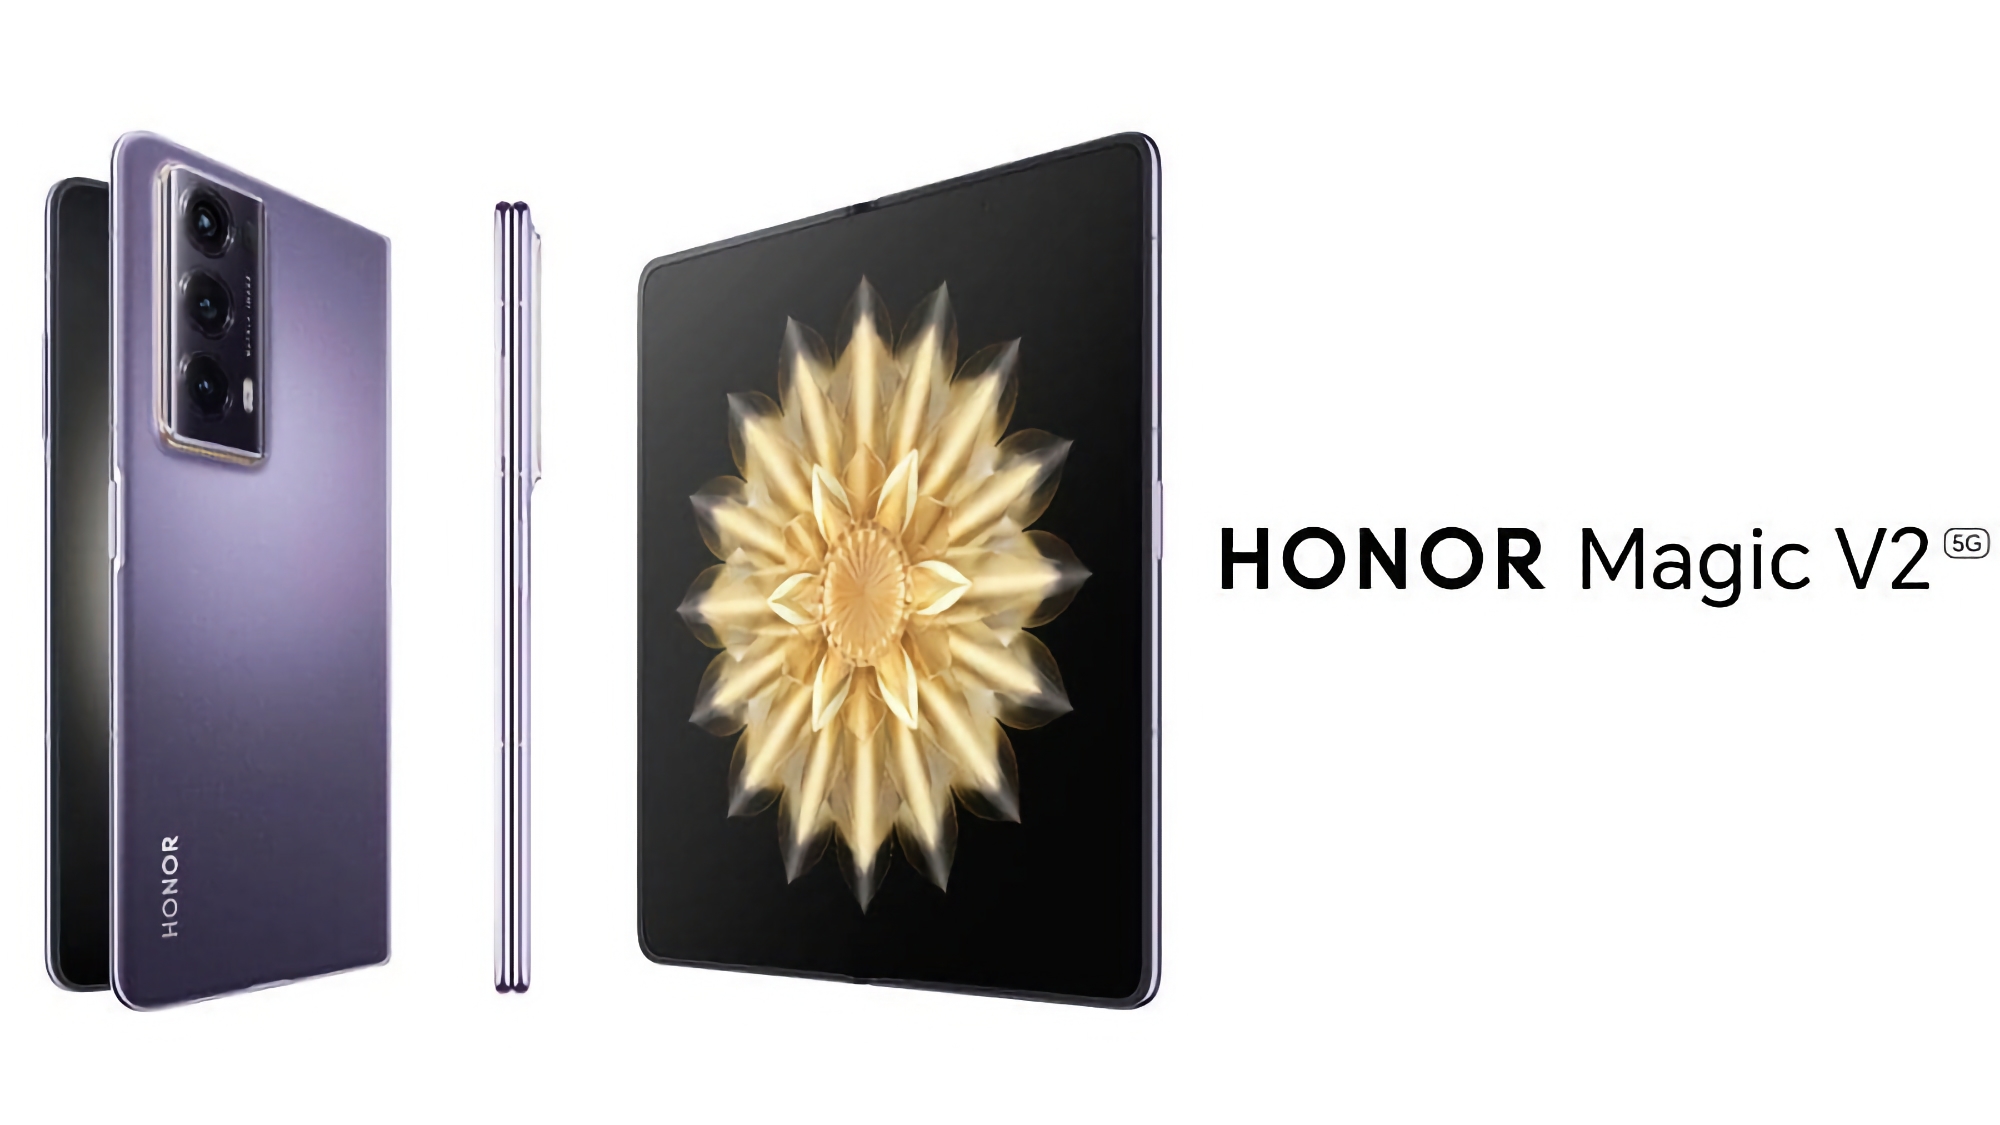 De lichtste en dunste opvouwbare smartphone op de markt, Honor Magic V2, debuteert in Europa op 26 januari